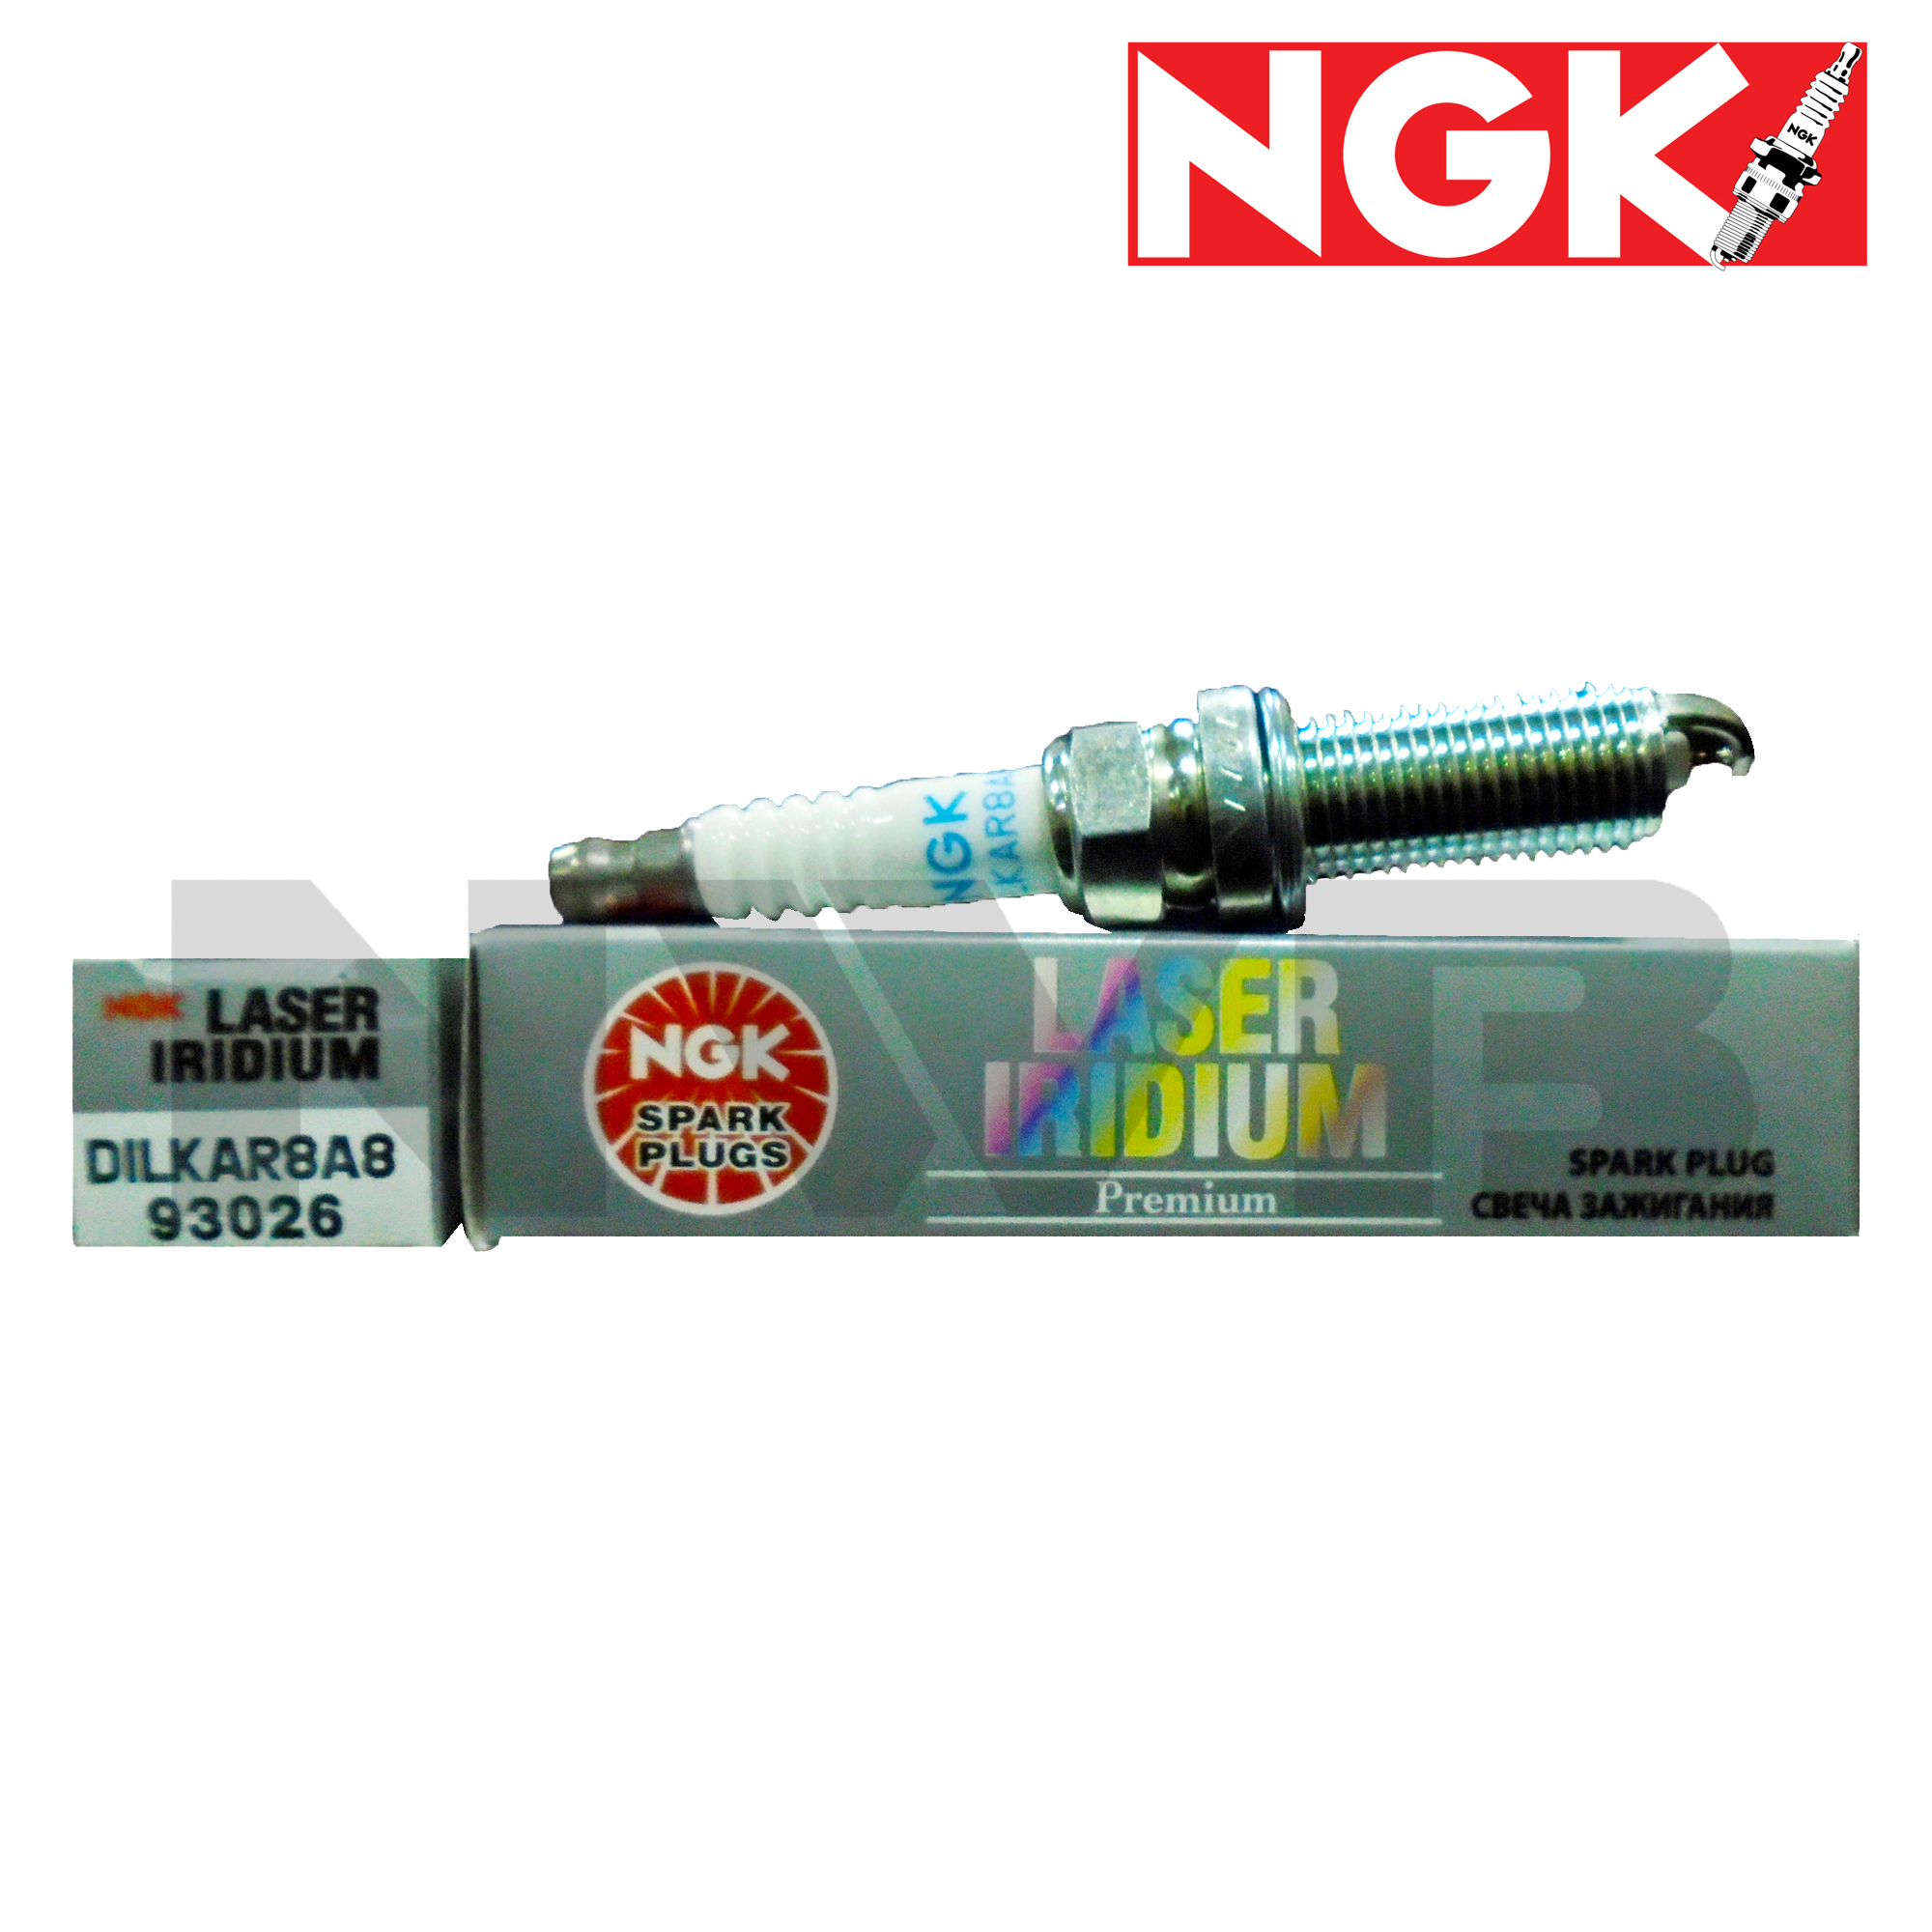 NGK For Nissan GT-R 2009-2020 Spark Plug Iridium Platinum Box of DILKAR8A8 93026 - 4